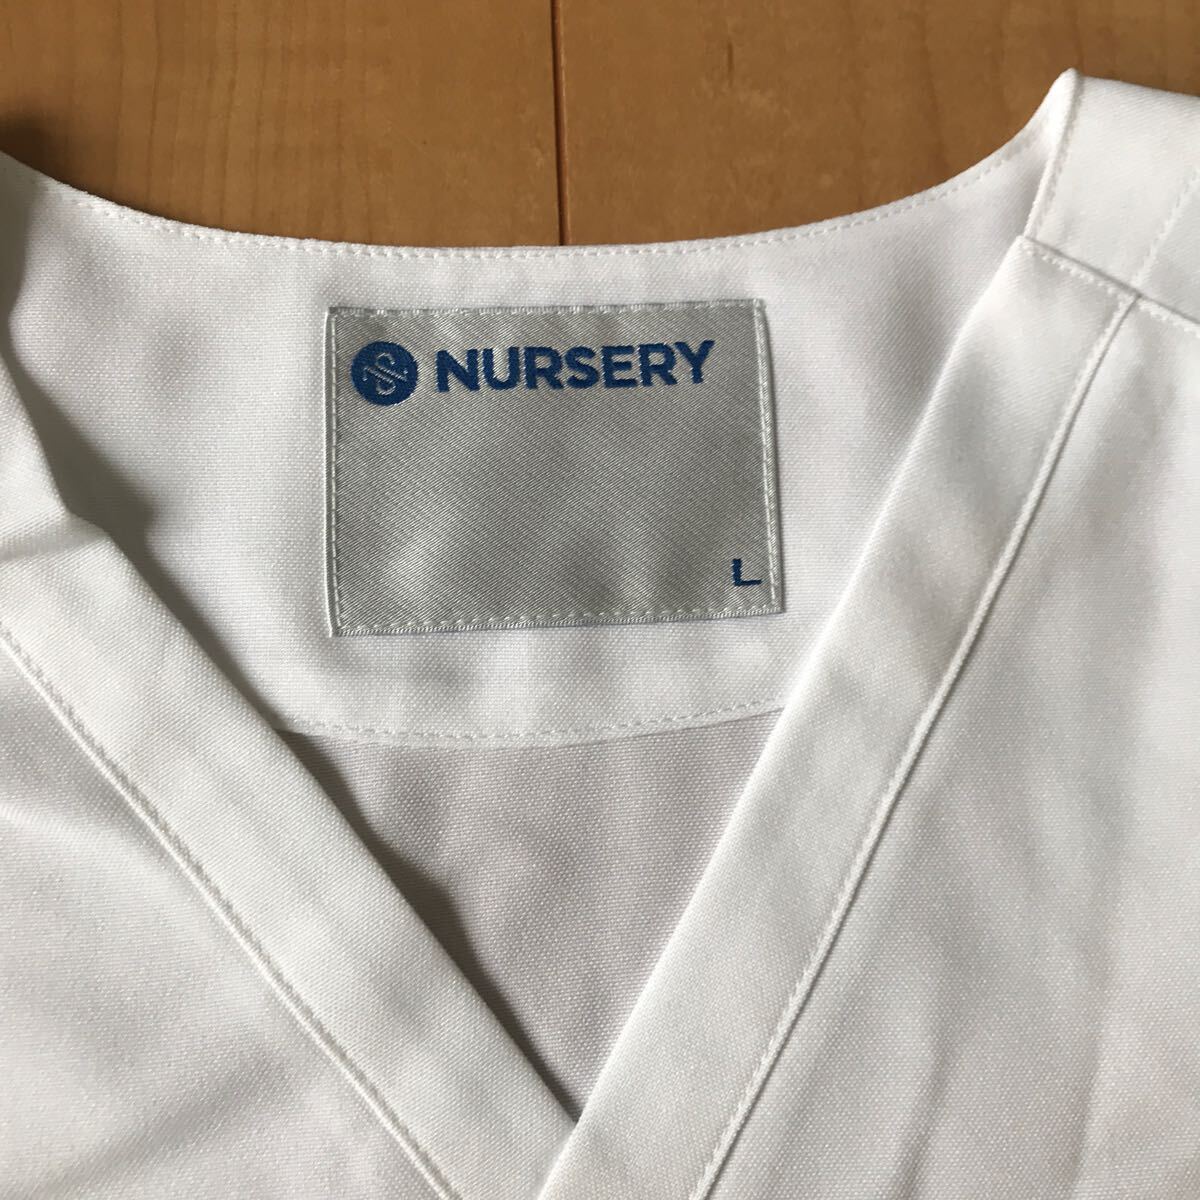  white garment nurse L size 